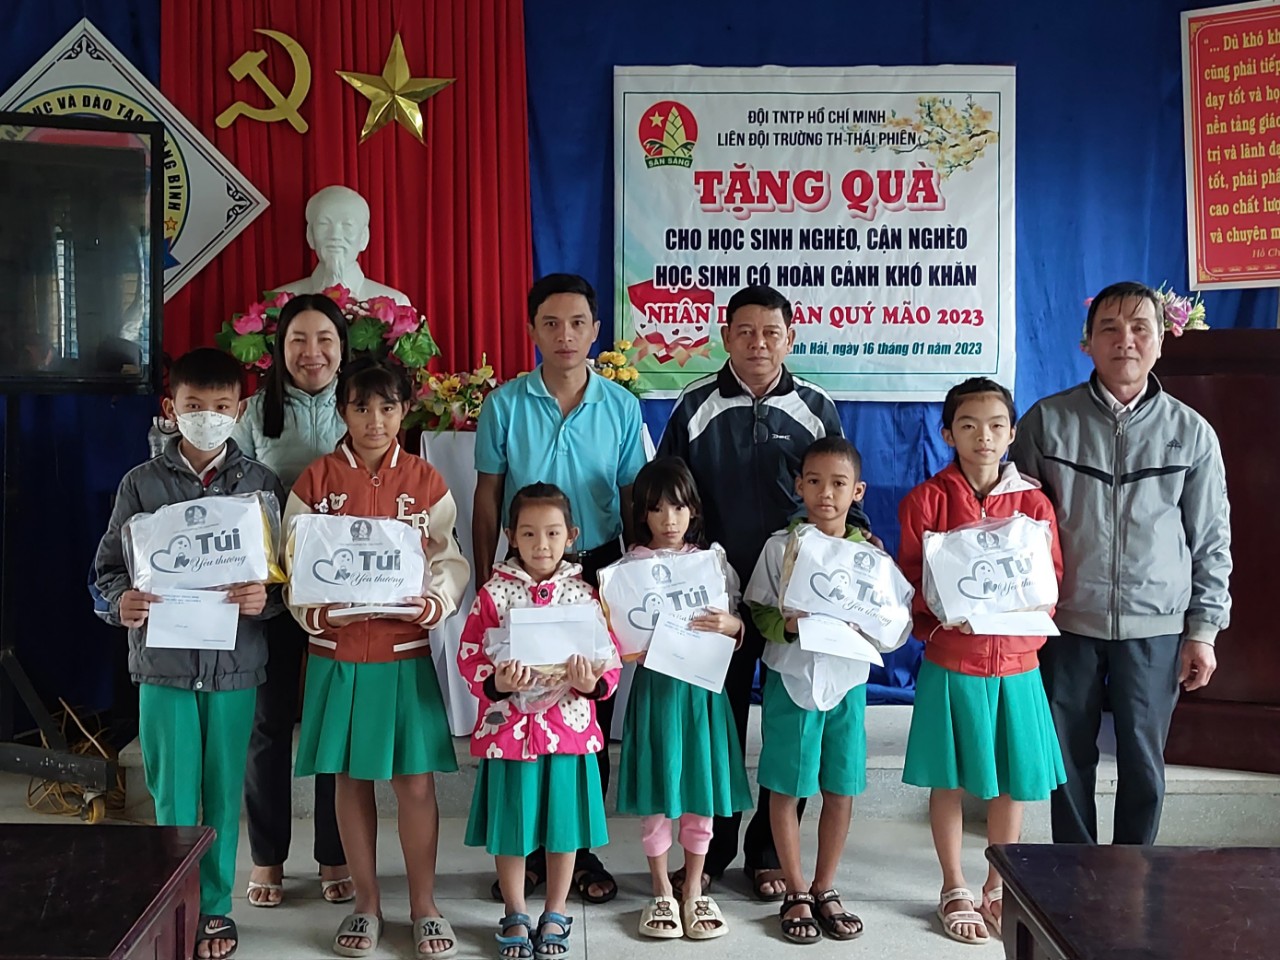 Liên đội Trường TH Thái Phiên “Hưởng ứng Tuần lễ Tết yêu thương” năm 2023